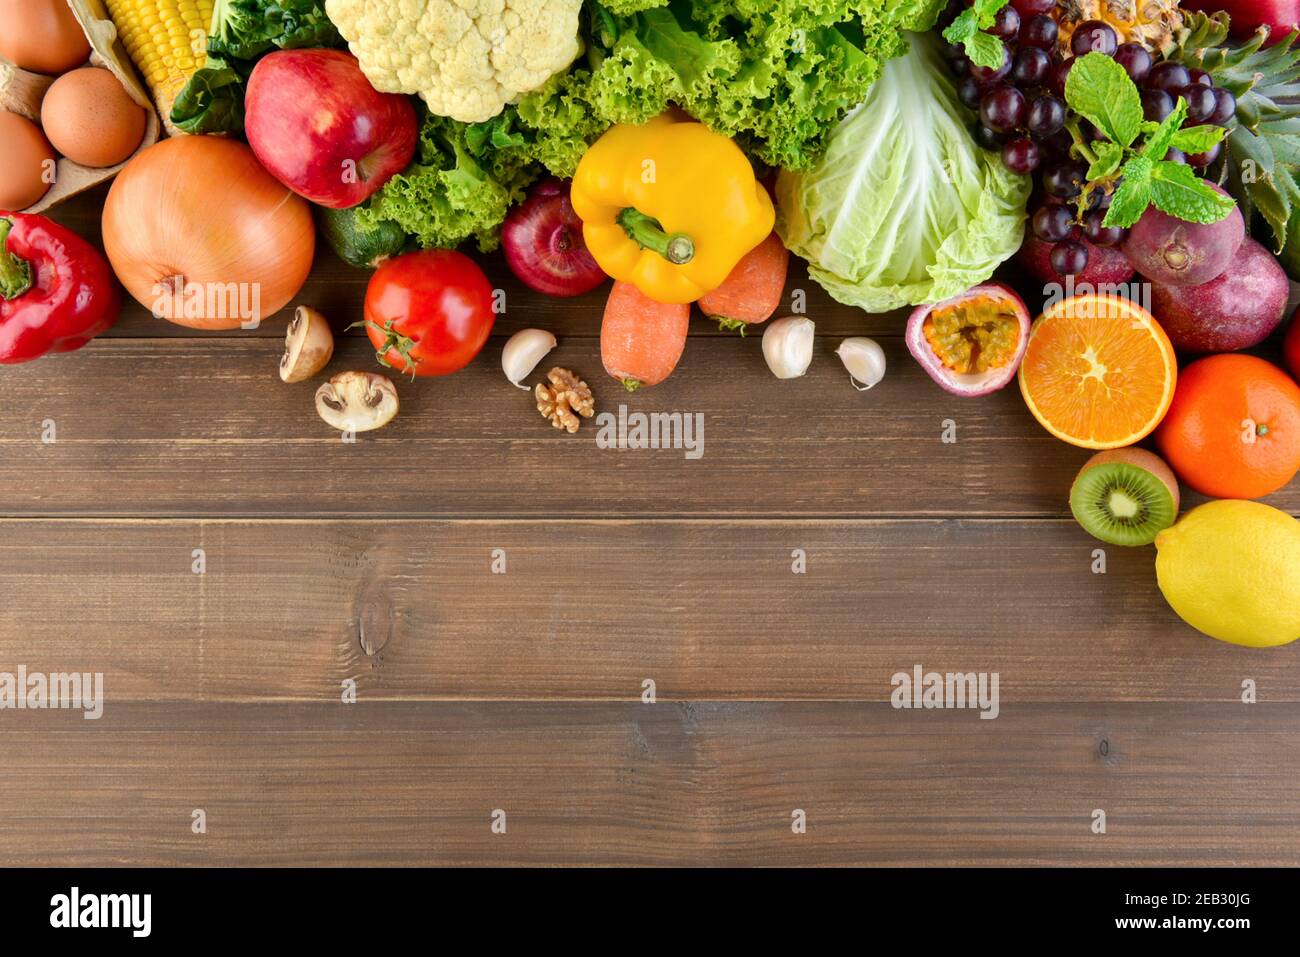 Draufsicht auf bunte, gesunde Rohkost inklusive Gemüse und Obst auf Holz Küche Arbeitsplatte Hintergrund mit Kopie Platz Stockfoto